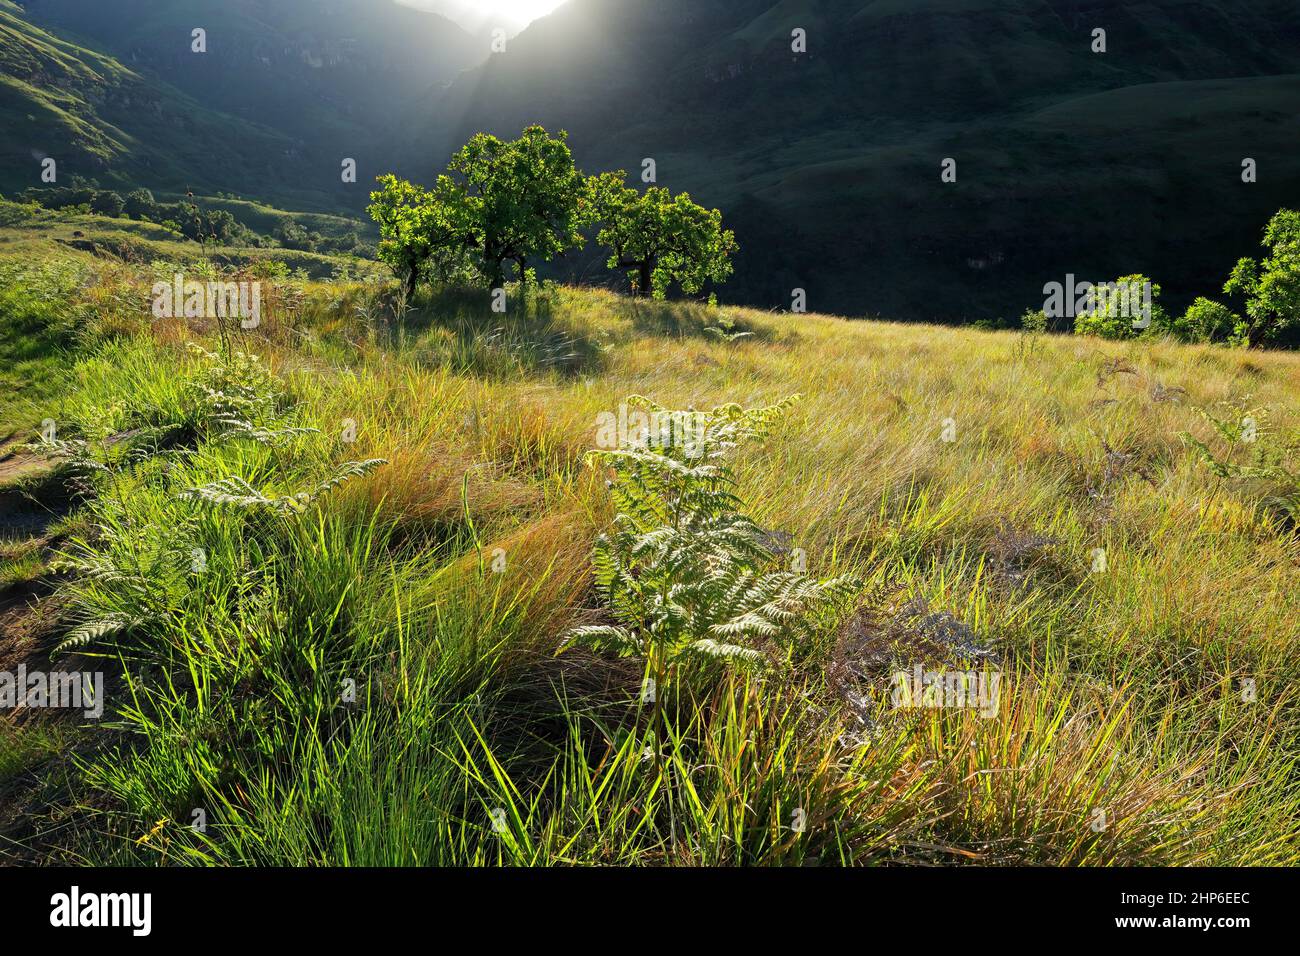 Paesaggio montano panoramico drakensberg con vegetazione lussureggiante nel tardo pomeriggio, Sud Africa Foto Stock